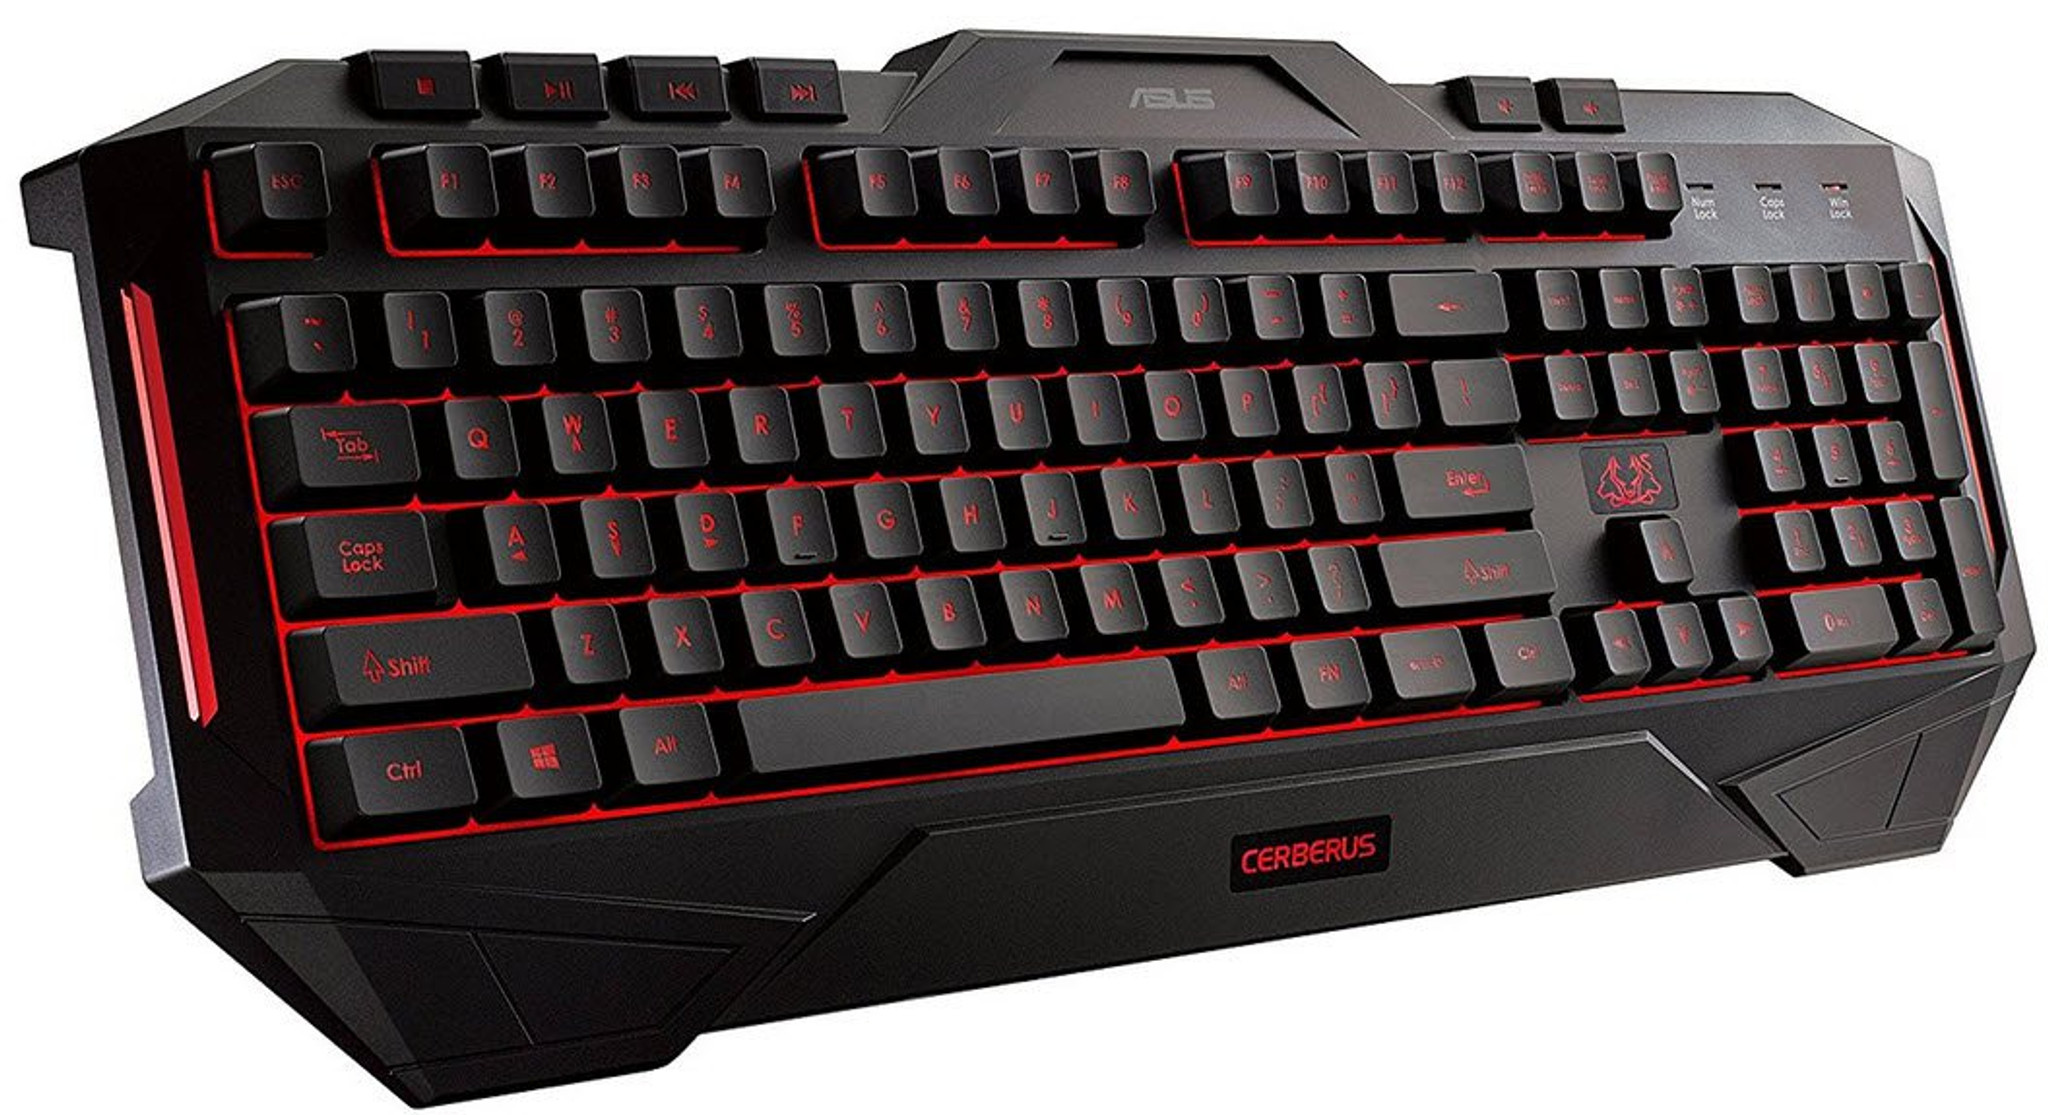 ASUS CERBERUS Keyboard MKII Multicolour Backlit Splash-proof Great buy